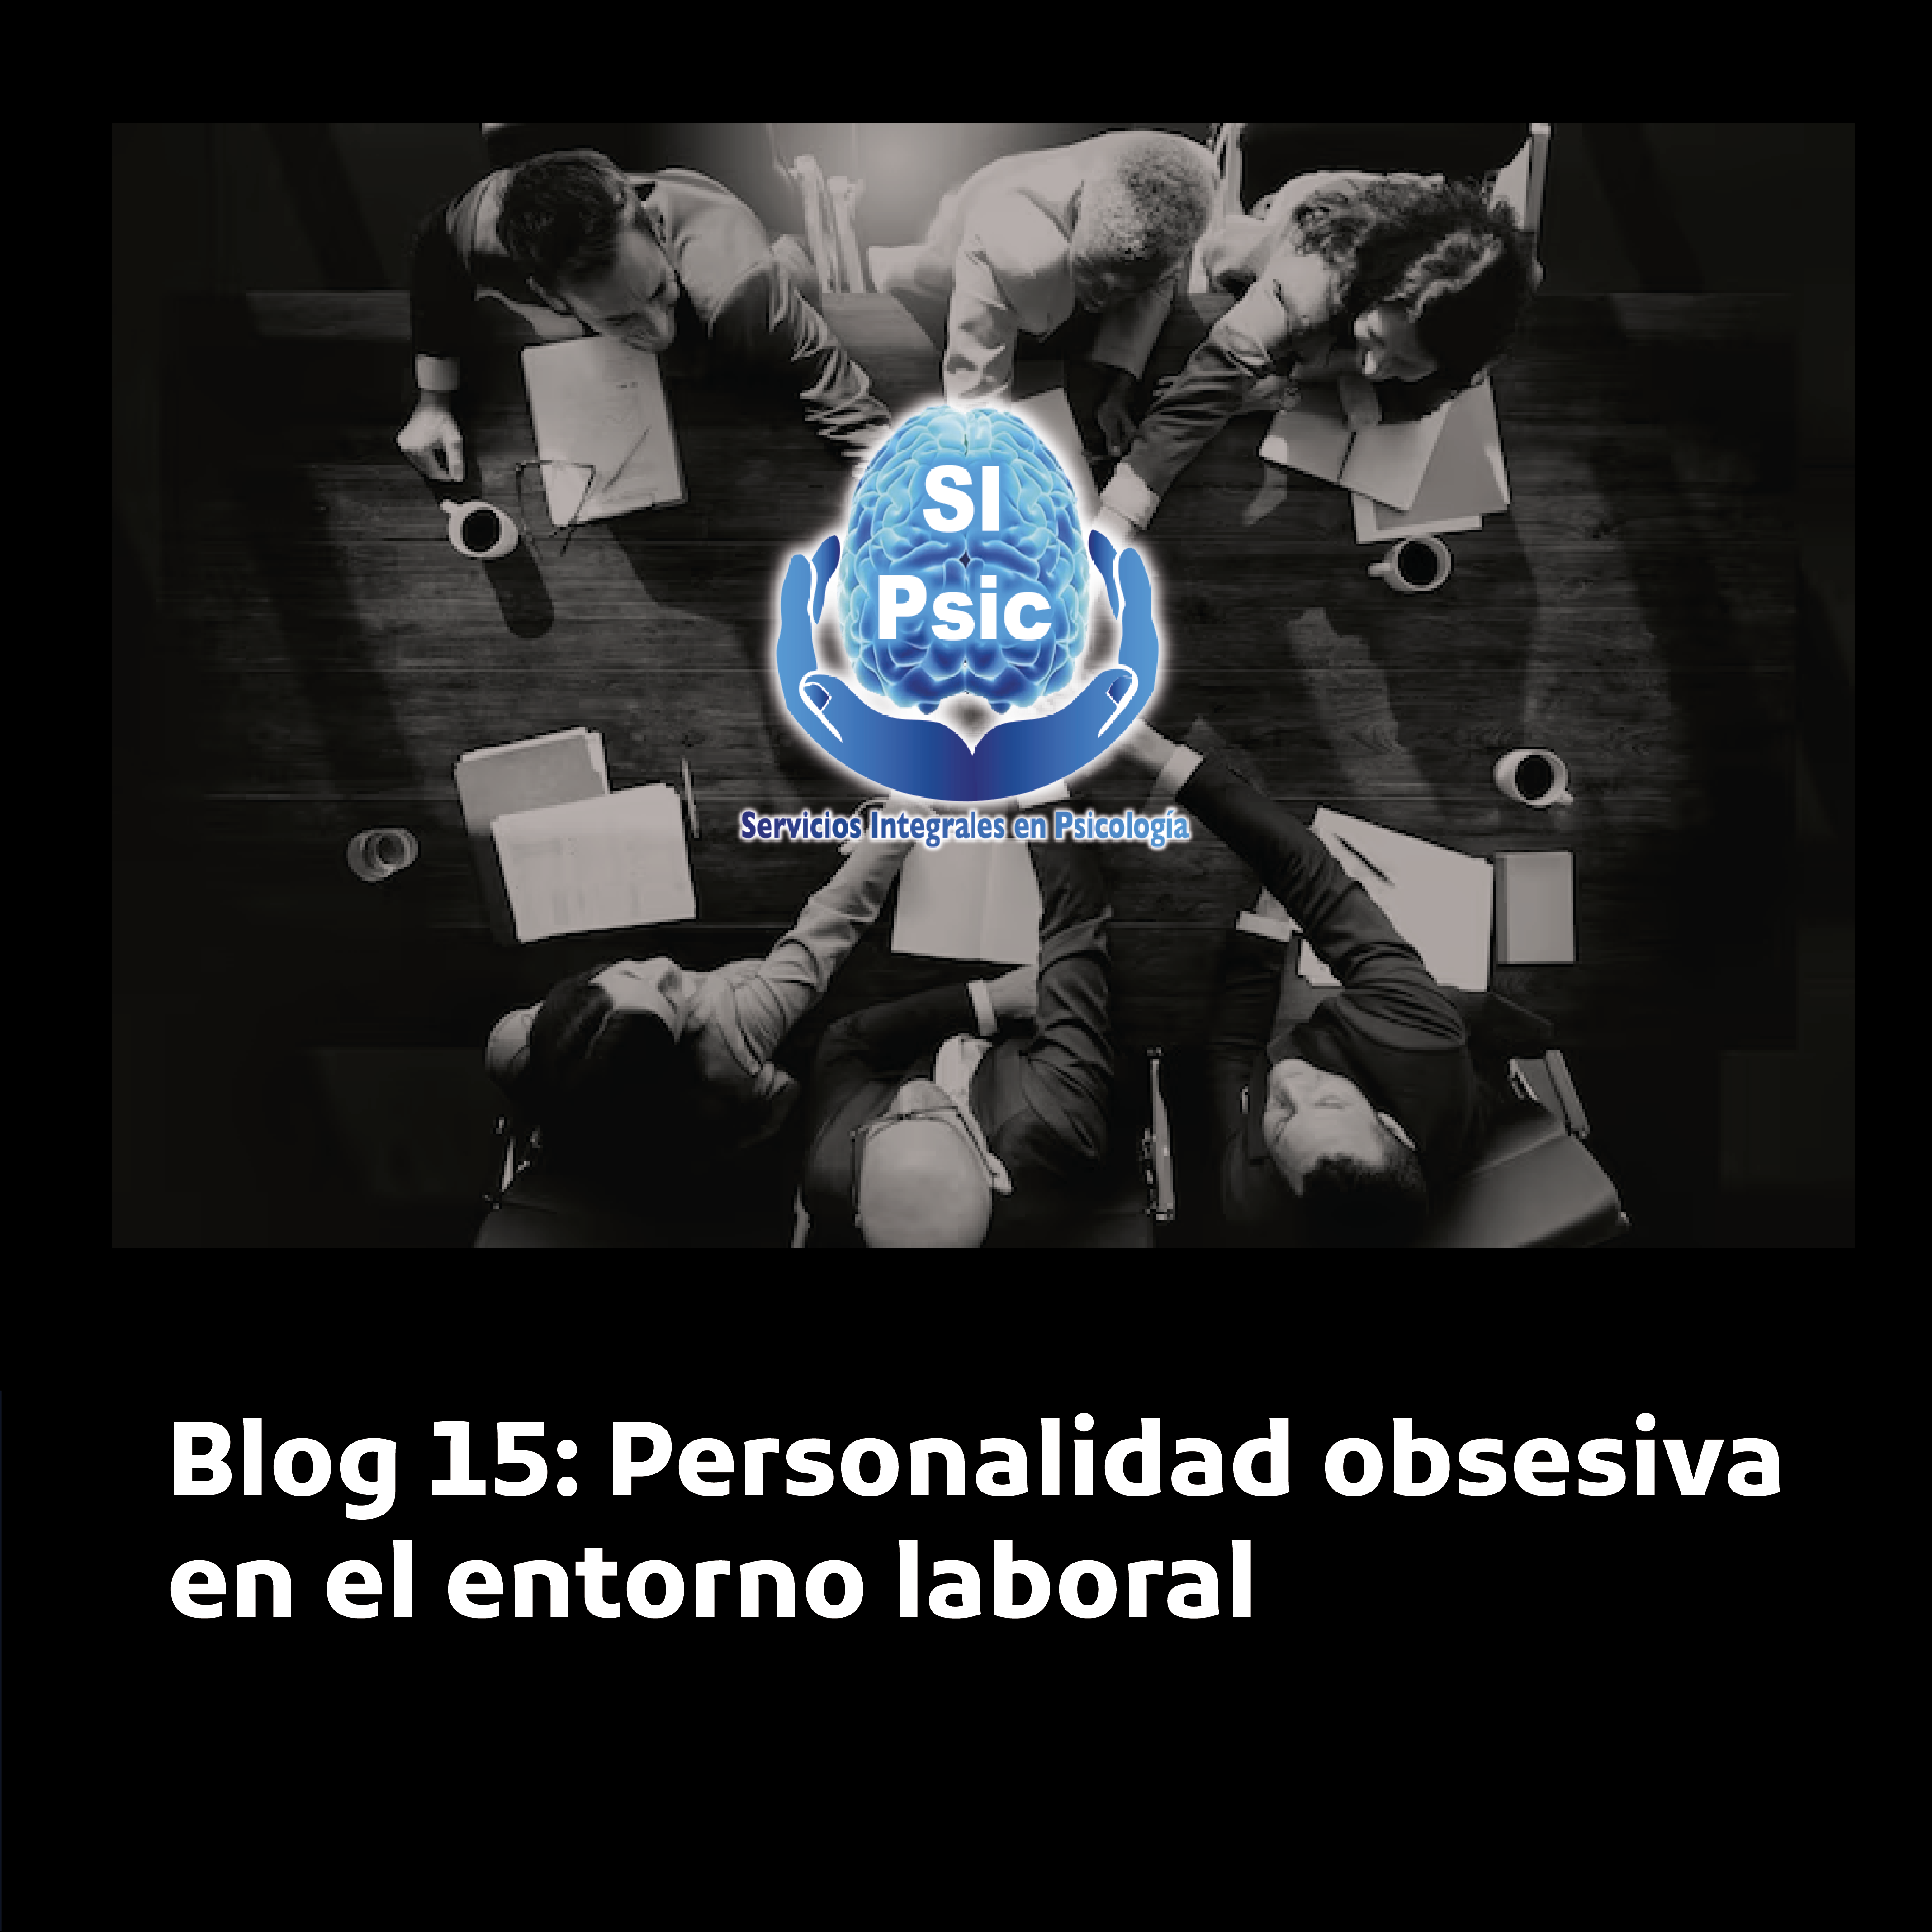 Blog 15: Personalidad obsesiva en el entorno laboral